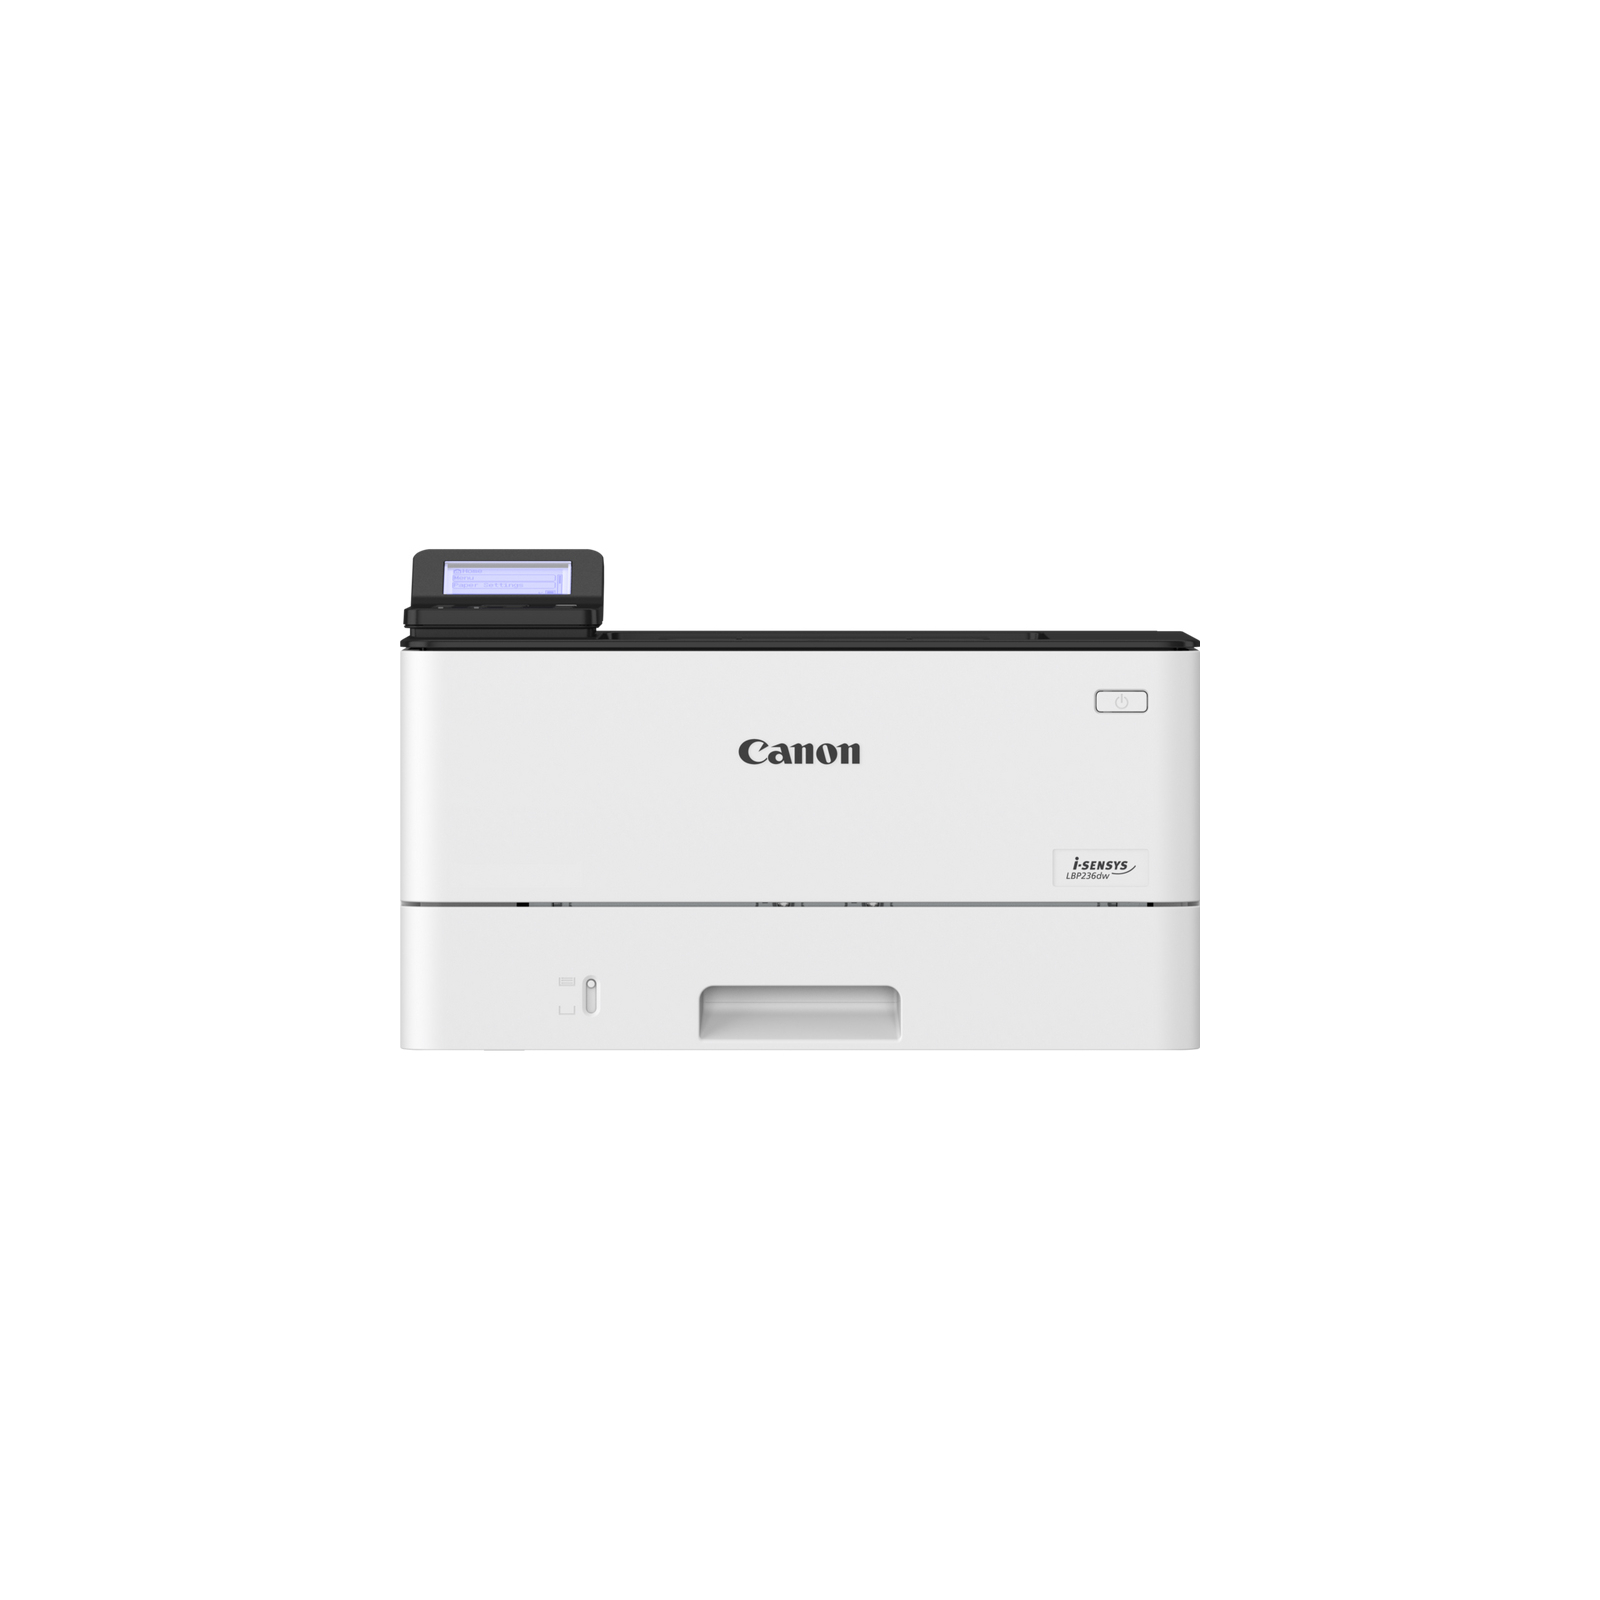 Лазерный принтер Canon i-SENSYS LBP-236dw (5162C006)